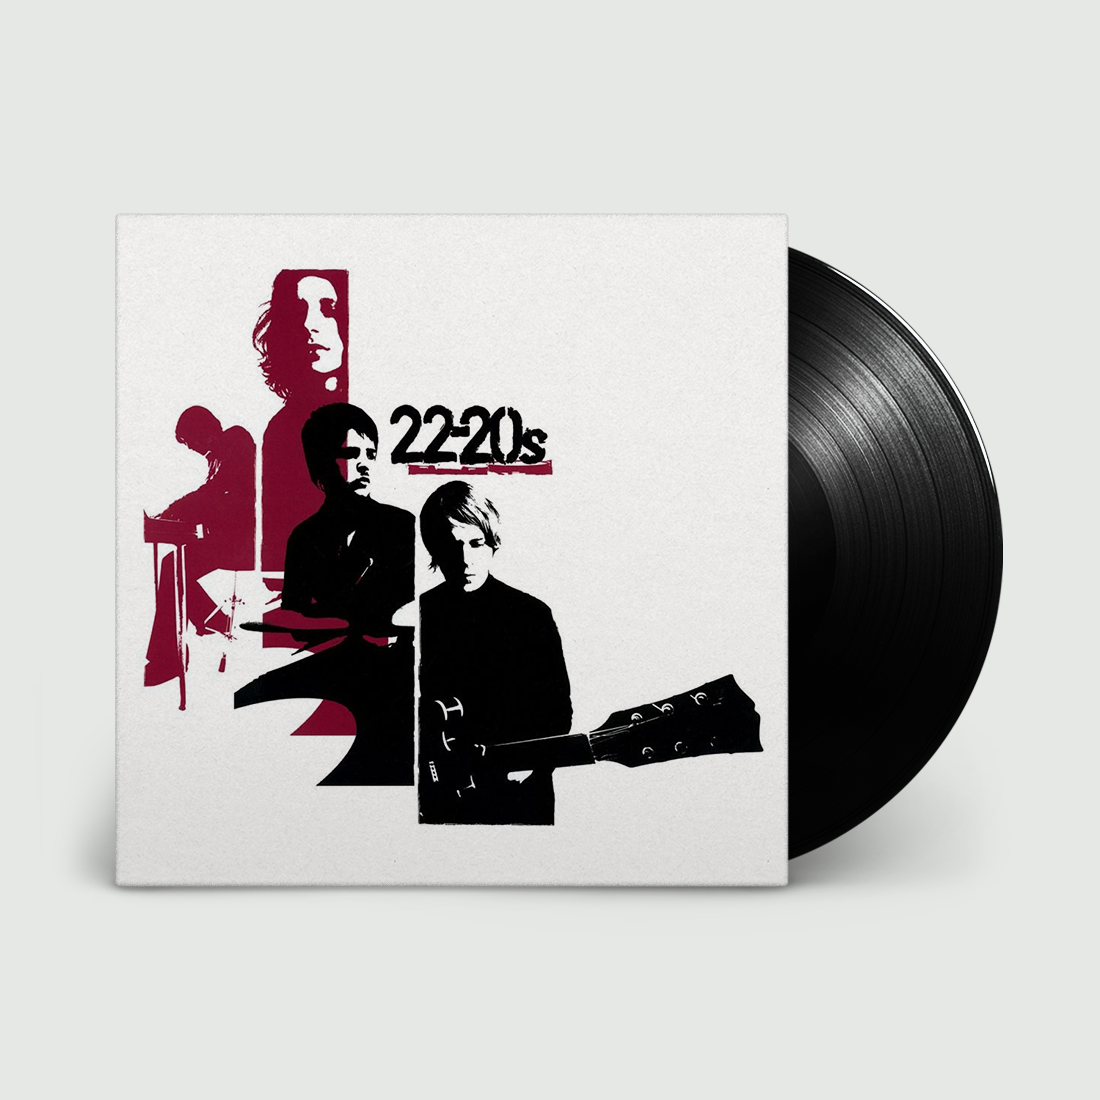 Twenty-Two-Twenties (22-20s): Vinyl LP